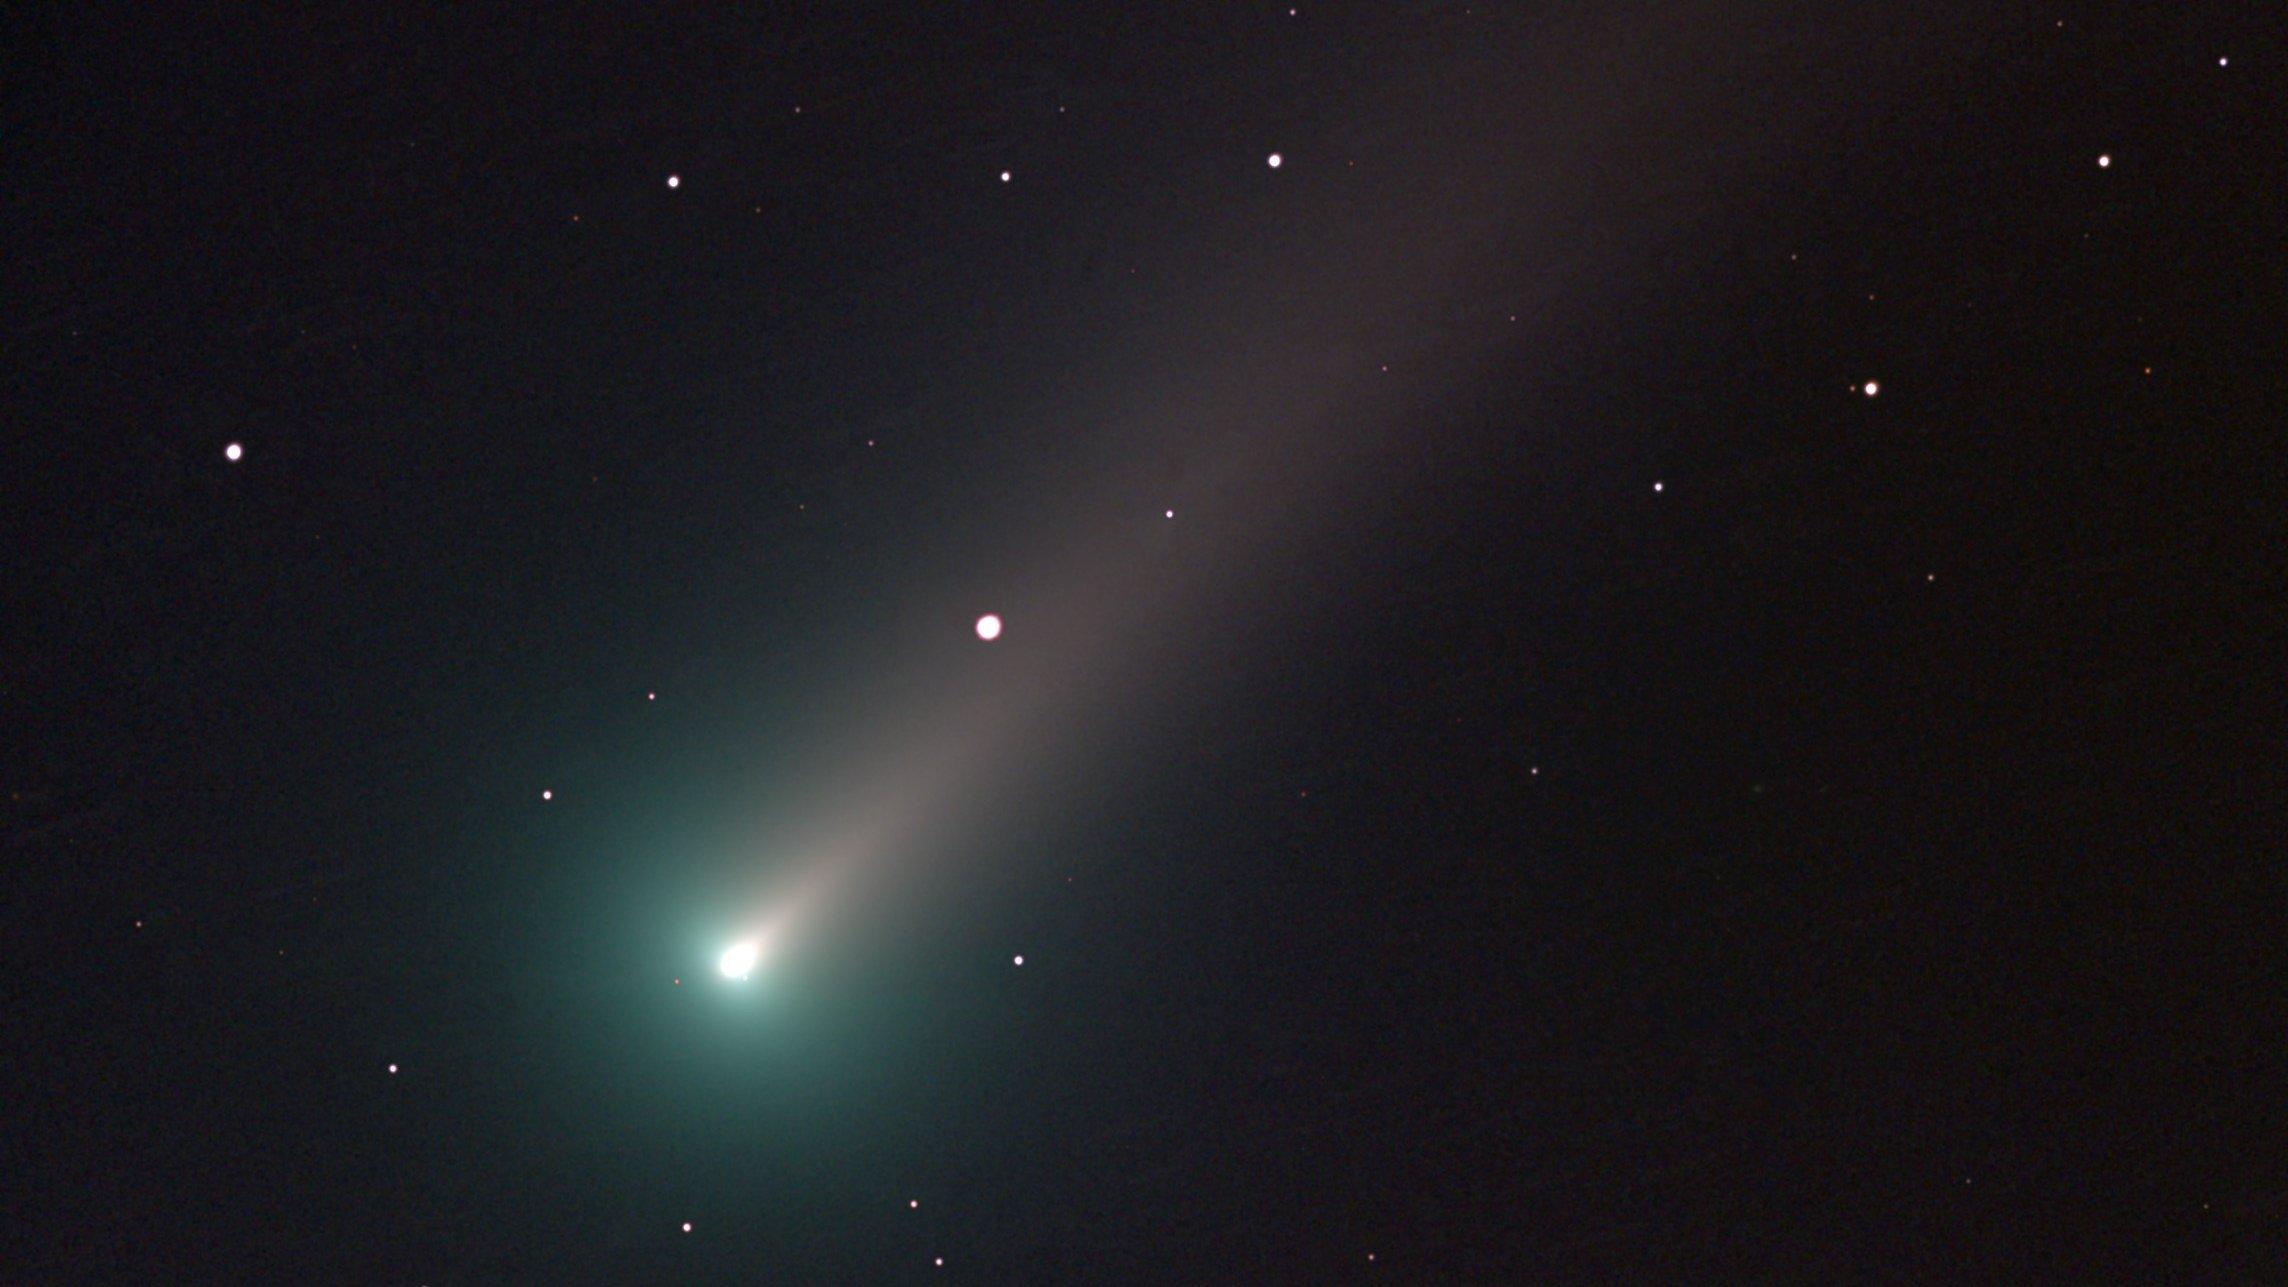 Der Komet Leonard zeigt einen hellen Kern, zusehen am unteren linken Bildrand. Der Kern ist von einer grünlichen Koma umgeben. Vom Kometenkern fächert sich nach rechts oben ein schmaler Schweif auf.